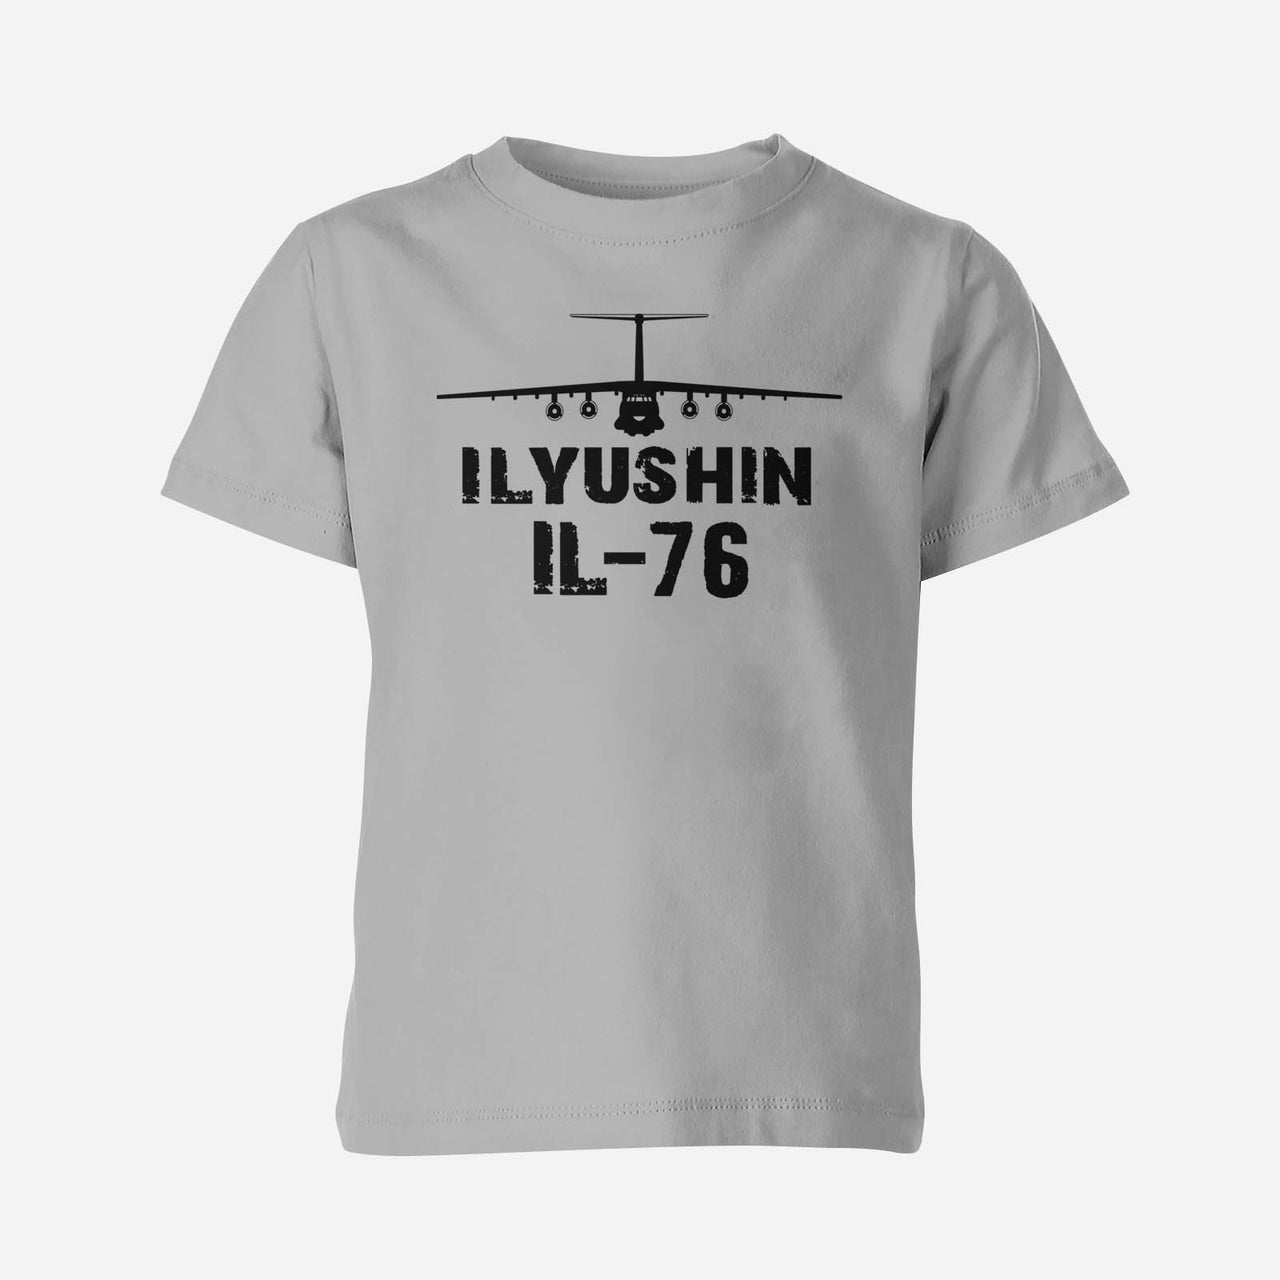 ILyushin IL-76 & Plane Designed Children T-Shirts